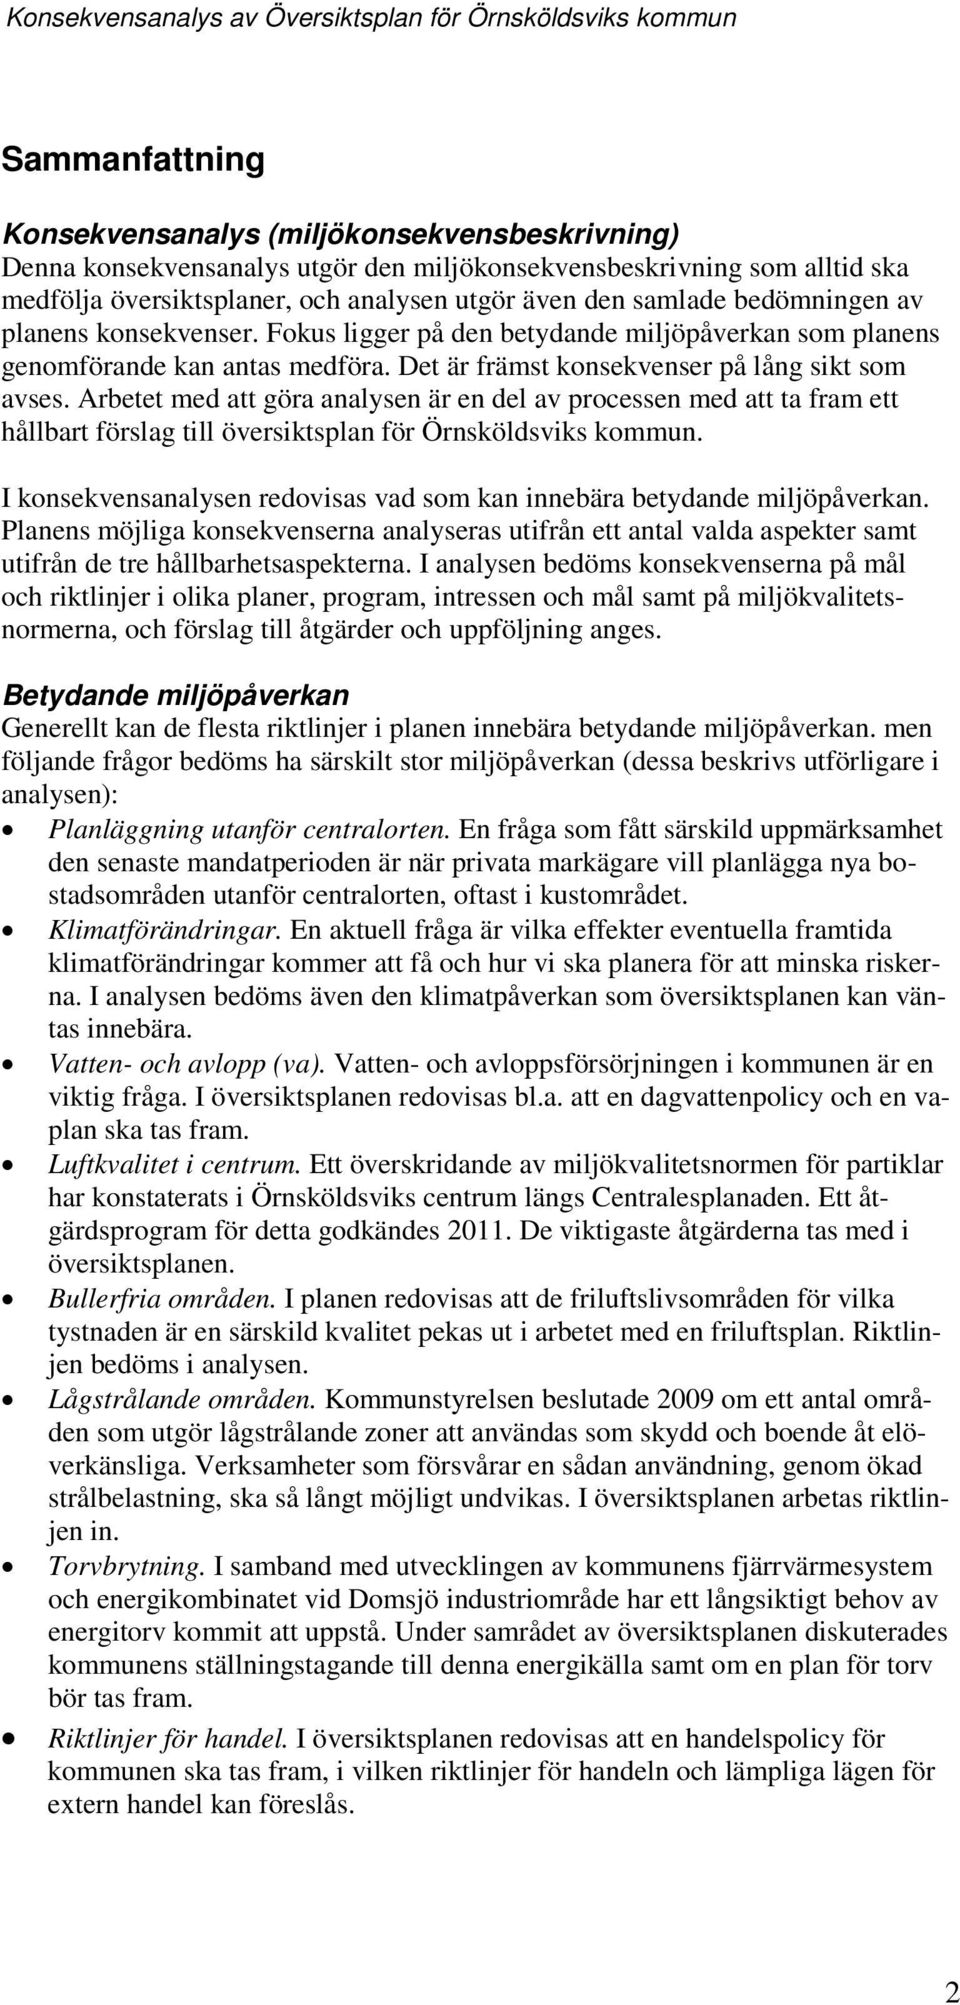 Arbetet med att göra analysen är en del av prcessen med att ta fram ett hållbart förslag till översiktsplan för Örnsköldsviks kmmun.